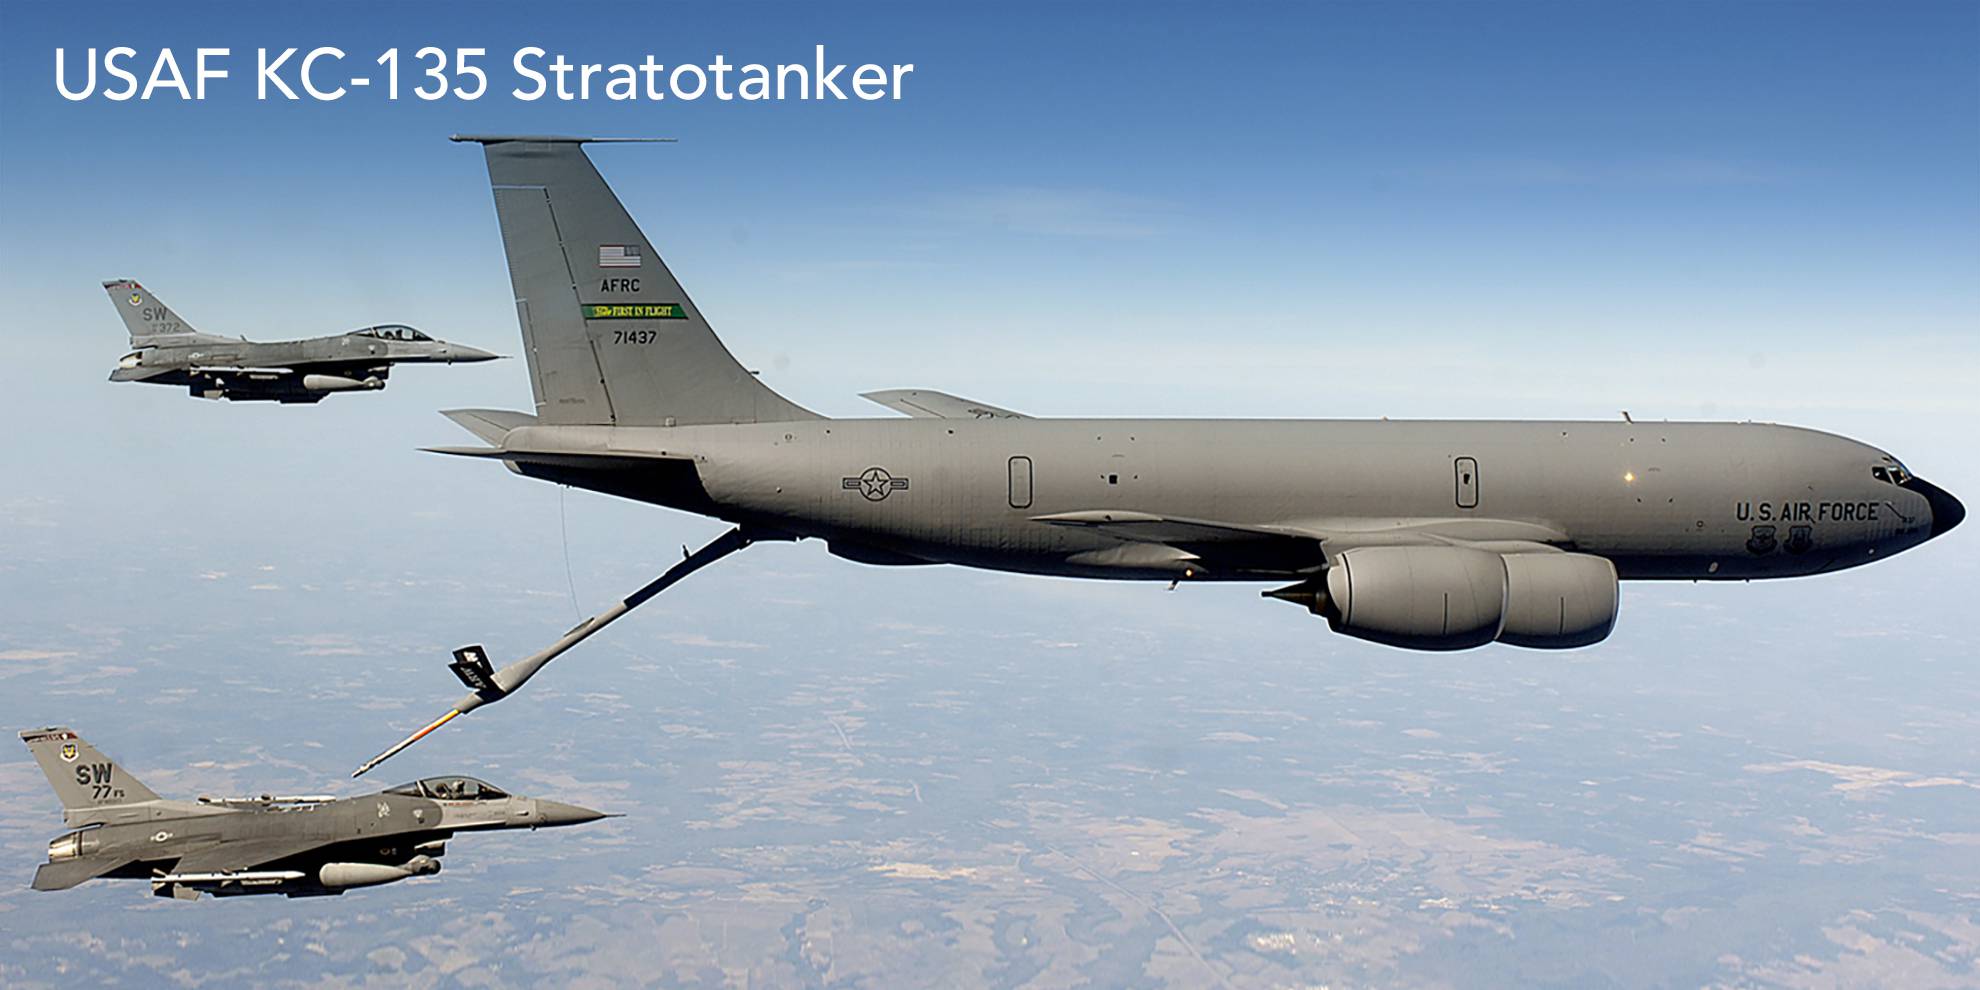 USAF KC-135 Stratotanker